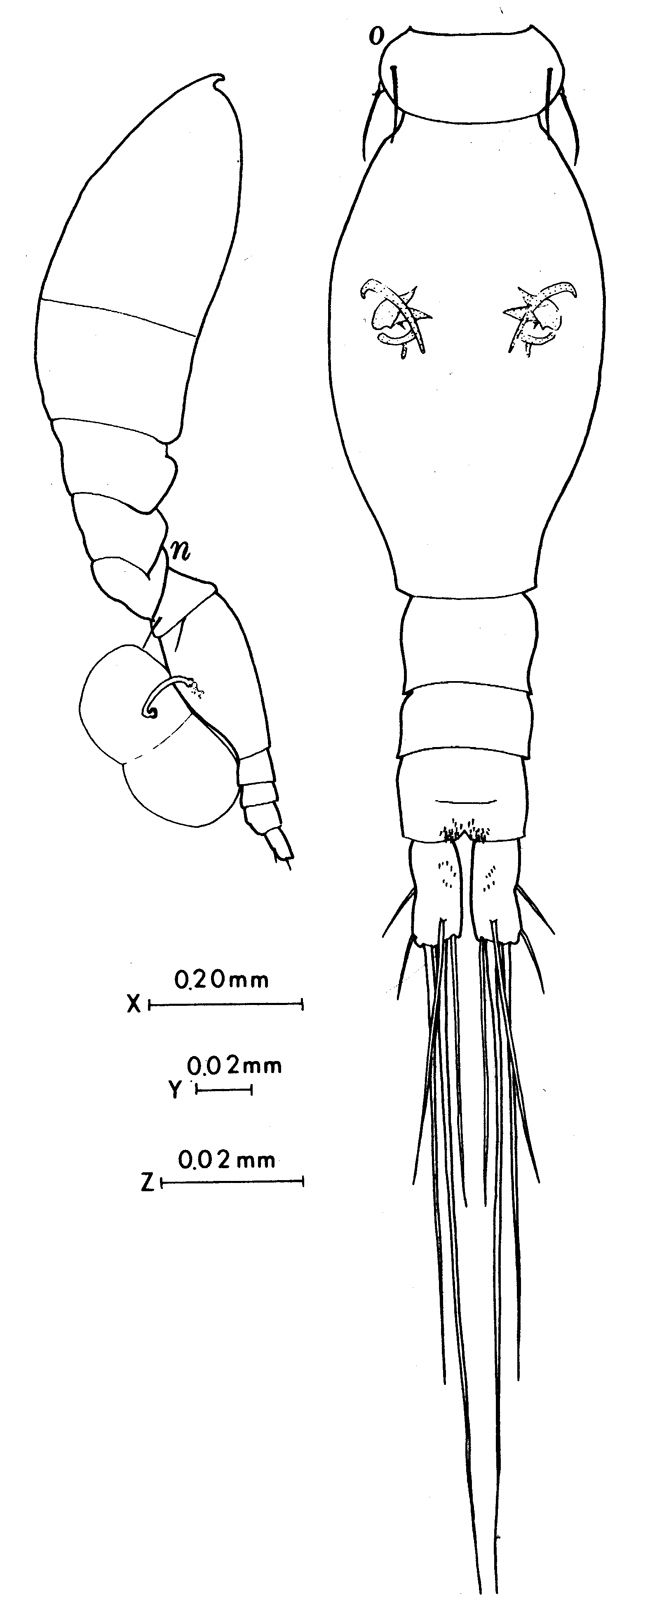 Espce Oncaea englishi - Planche 6 de figures morphologiques